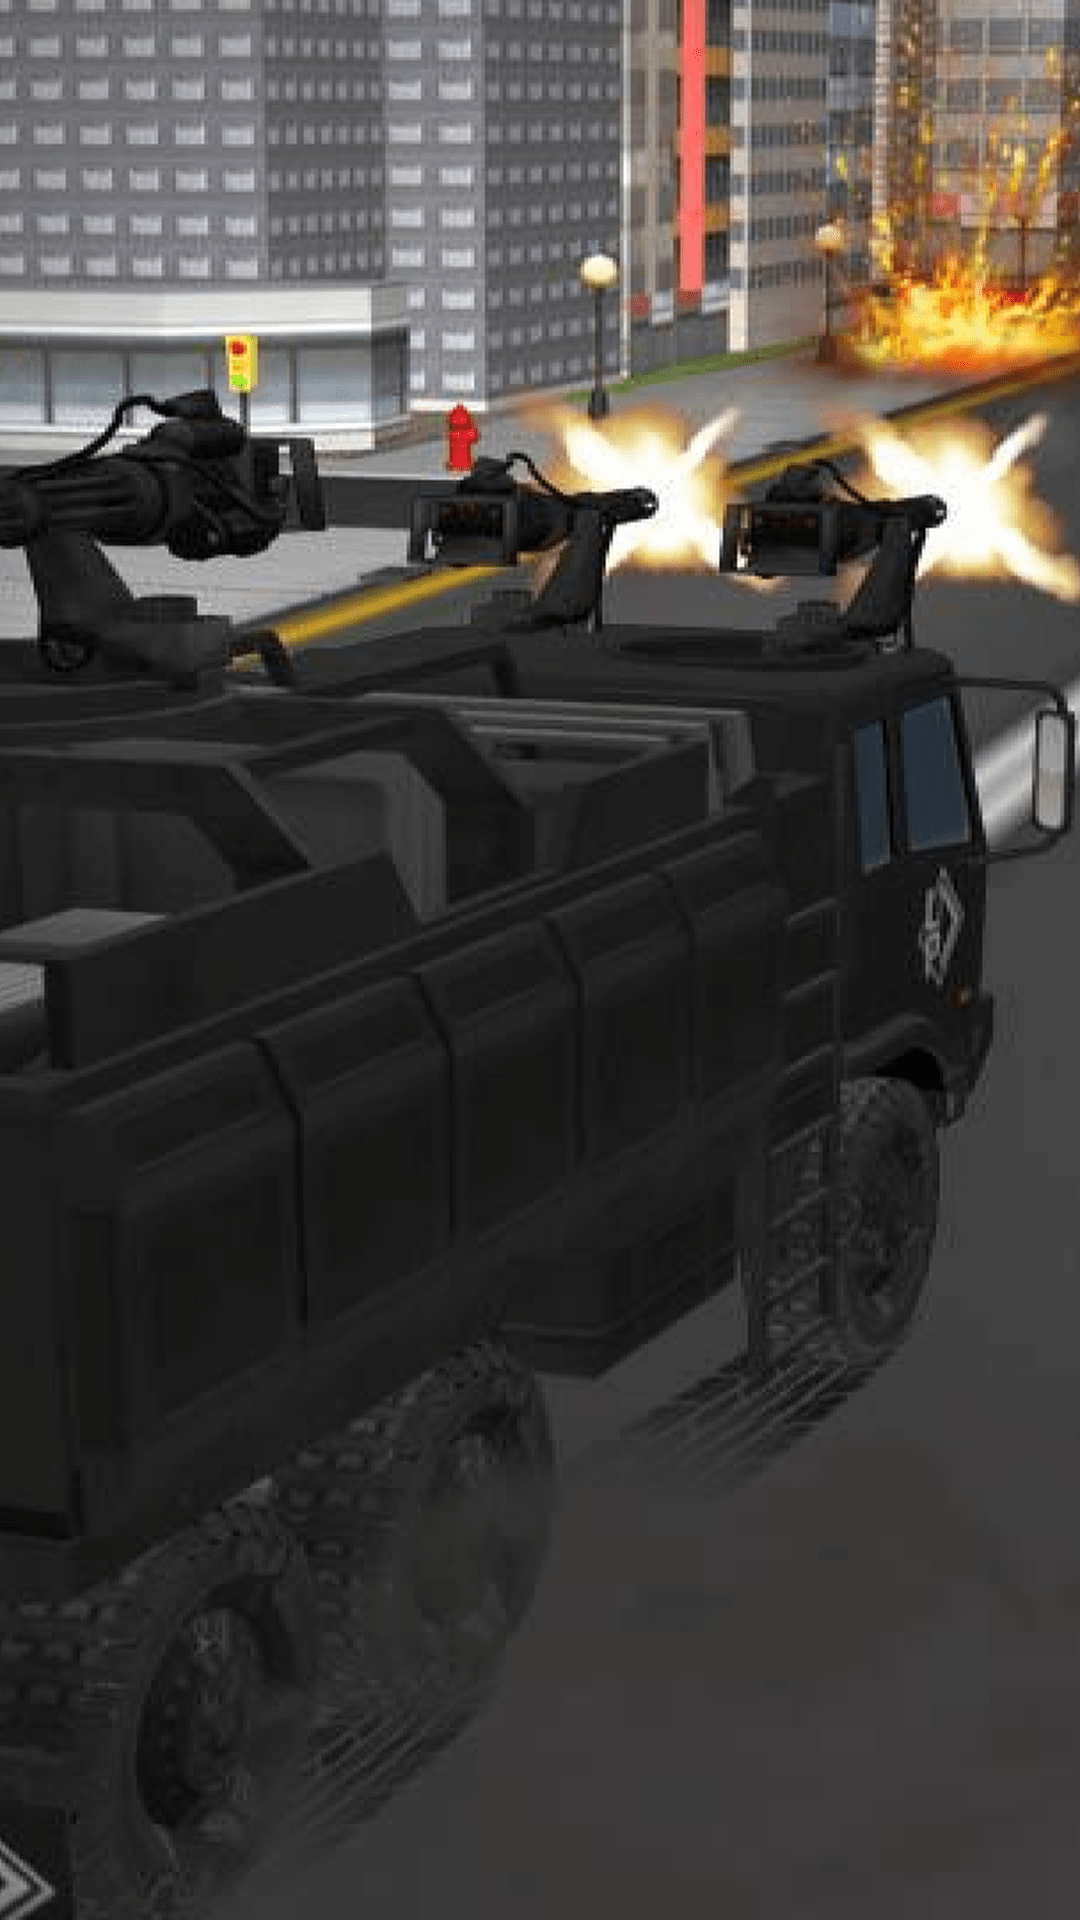 超级装甲车安卓版-超级装甲车游戏下载 v1.1